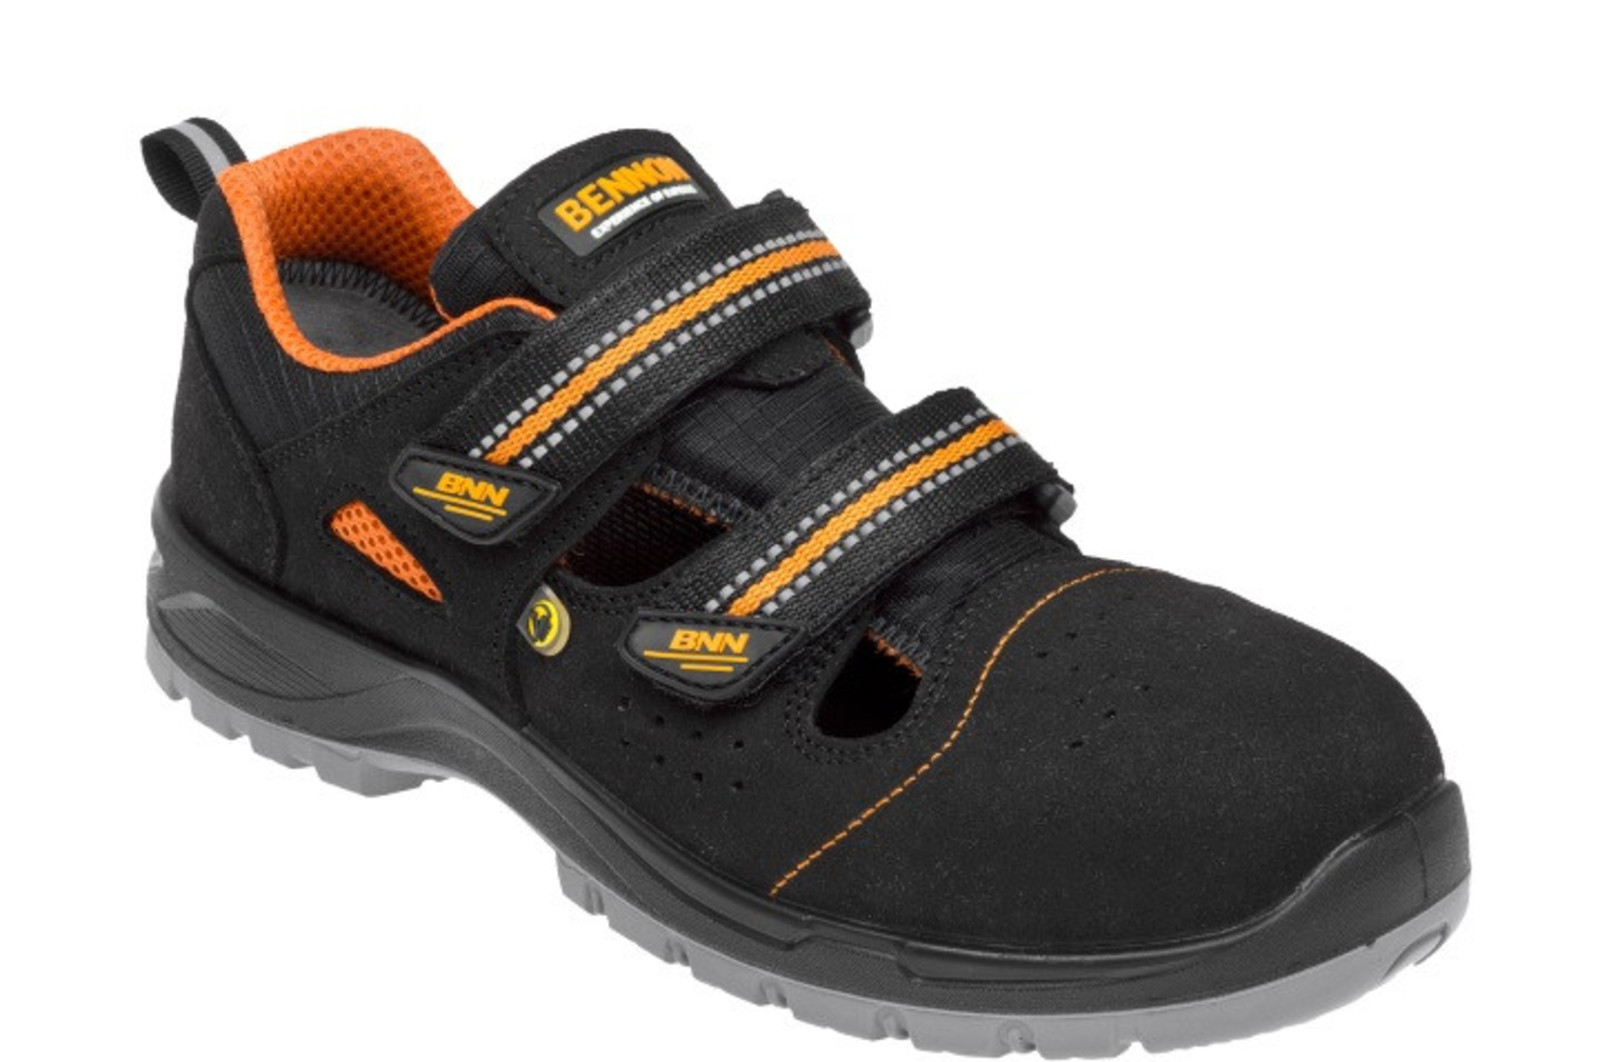 Bezpečnostné sandále Bennon Nux S1P ESD metal free - veľkosť: 42, farba: čierna